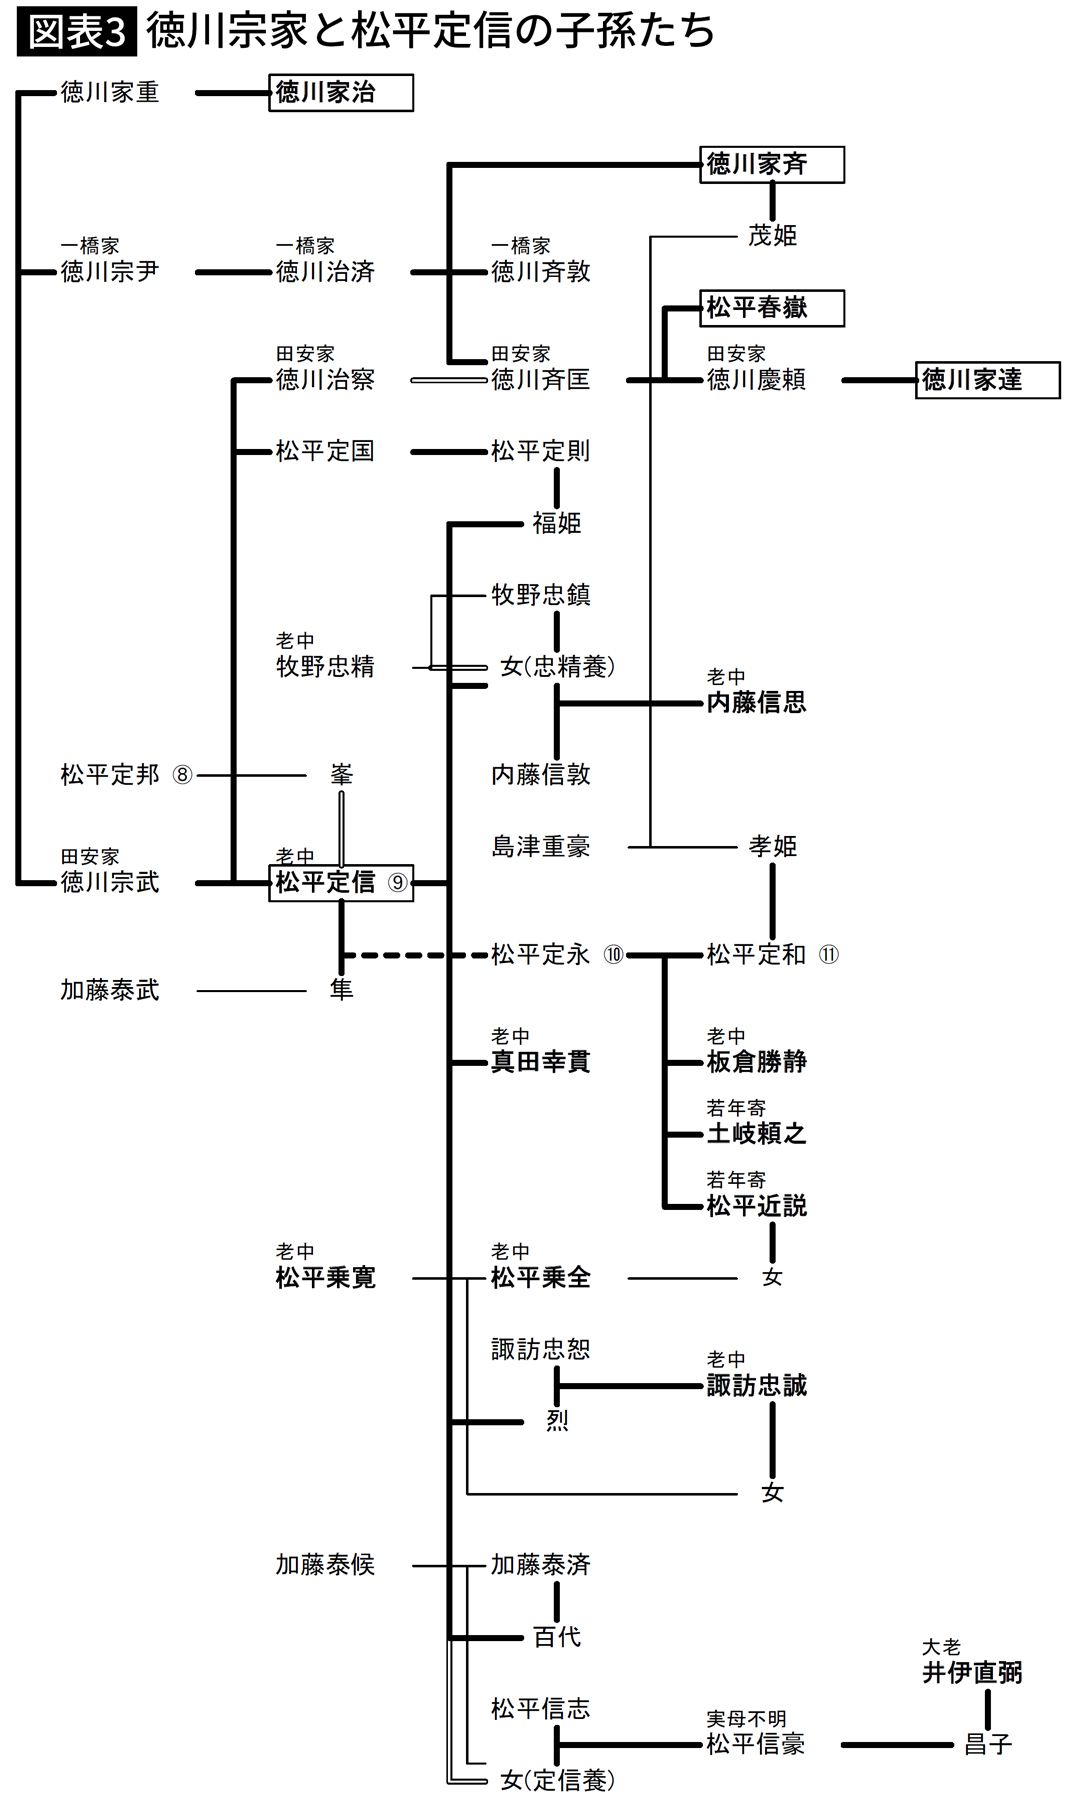 【図表】徳川宗家と松平定信の子孫たち